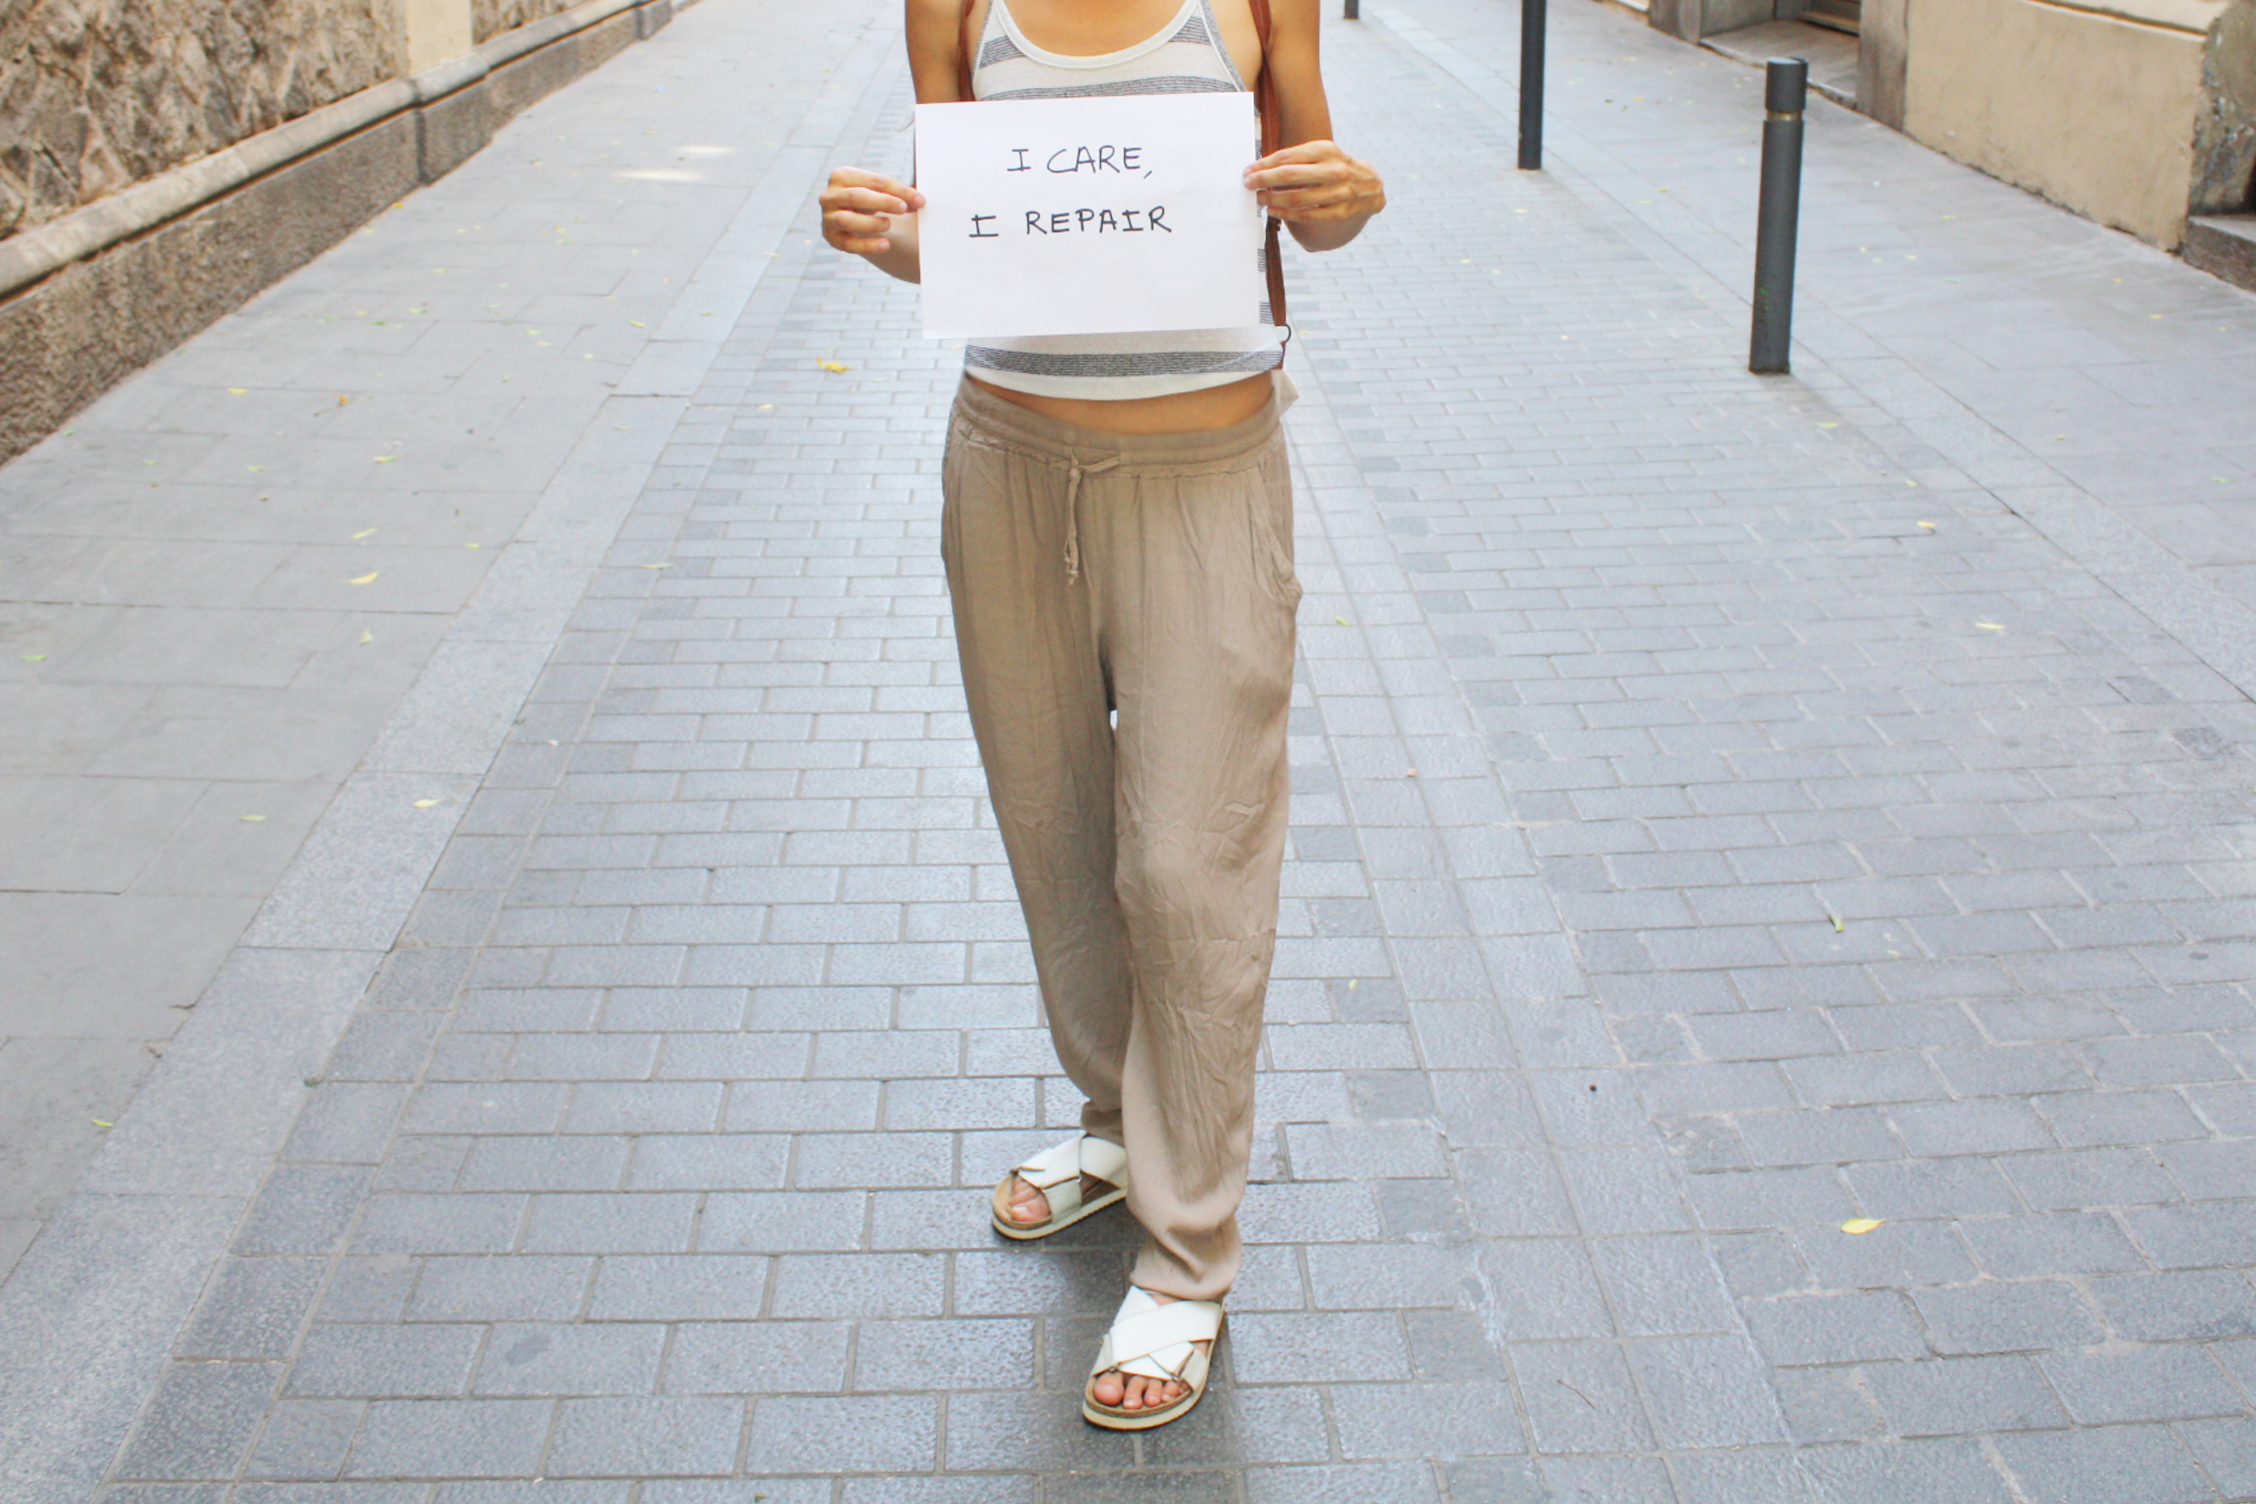 Chica vistiendo sandalias de piel renovadas con los productos TRG the One y mostrando un cartel que pone "I Care, I Repair"